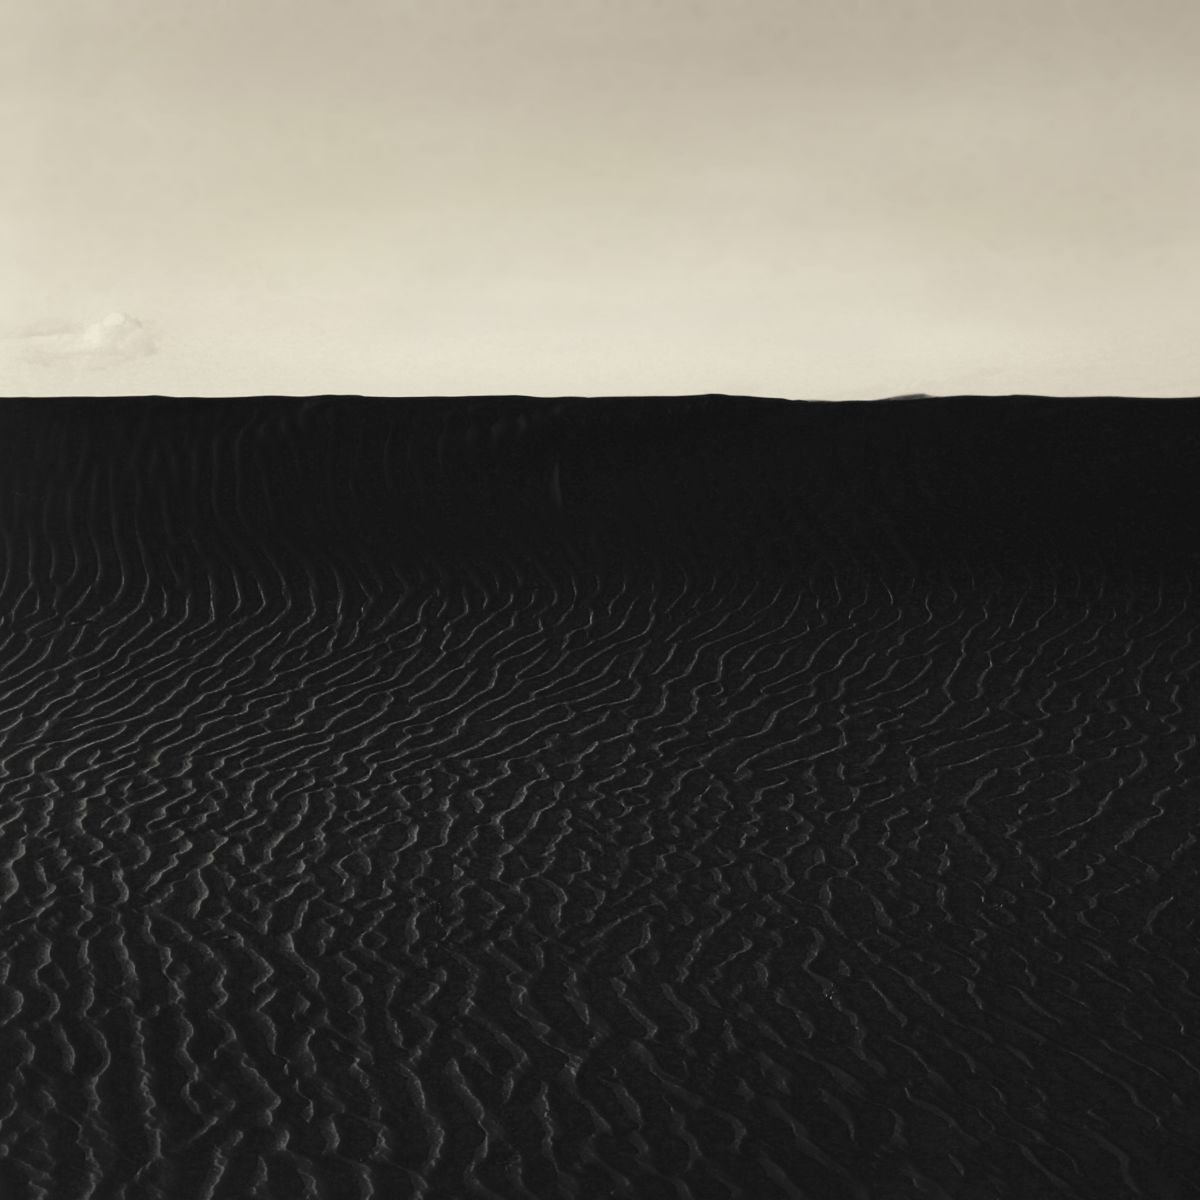 Dark sands by Nadia Attura